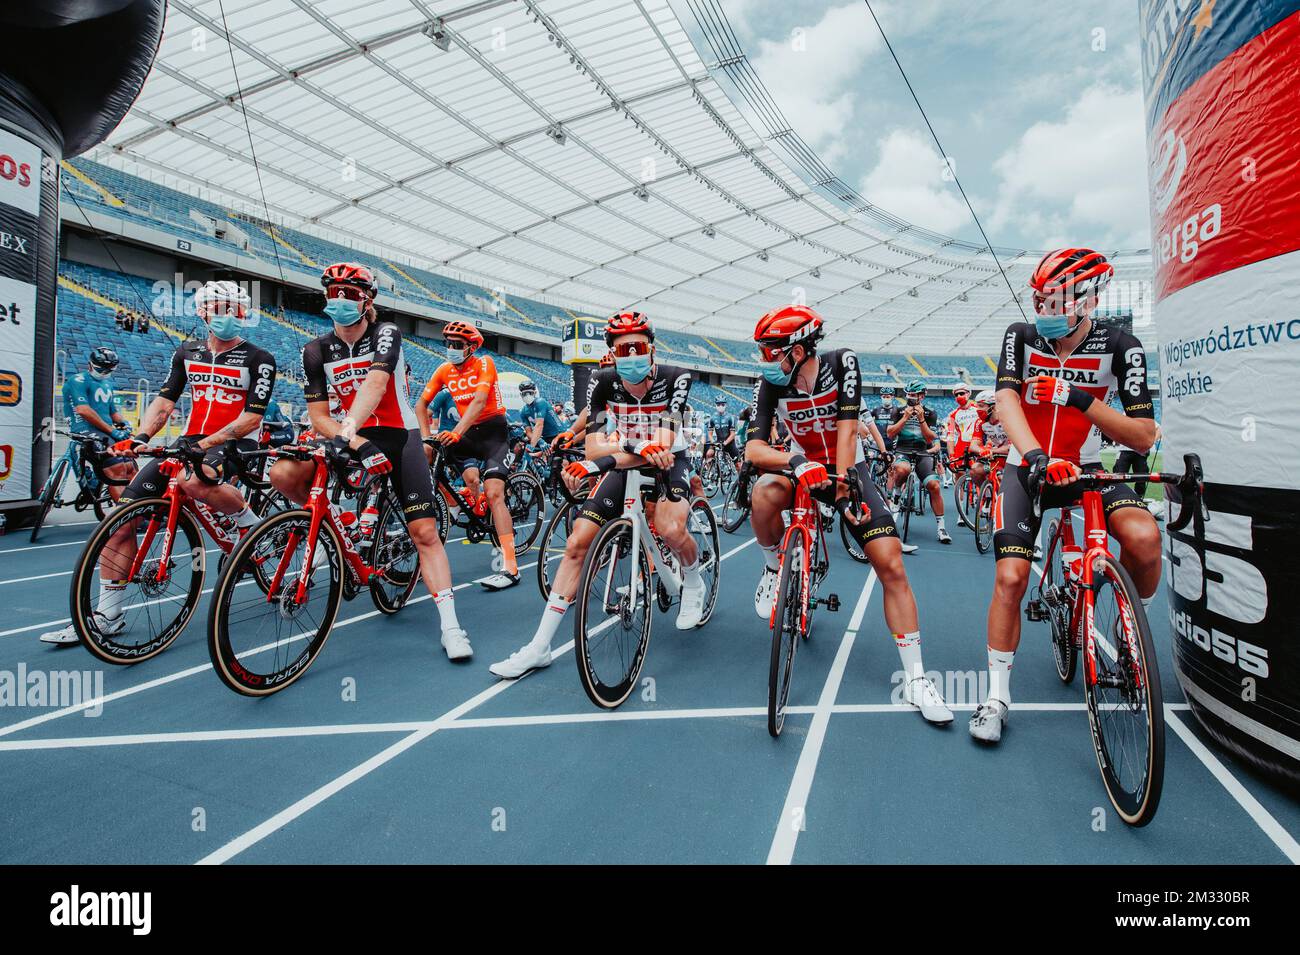 Cyclistes au début de la première étape de la course cycliste Tour de Pologne, près de 200 km de Chorzow à Katowice, en Pologne, le mercredi 05 août 2020. BELGA PHOTO Szymon Gruchalski Banque D'Images